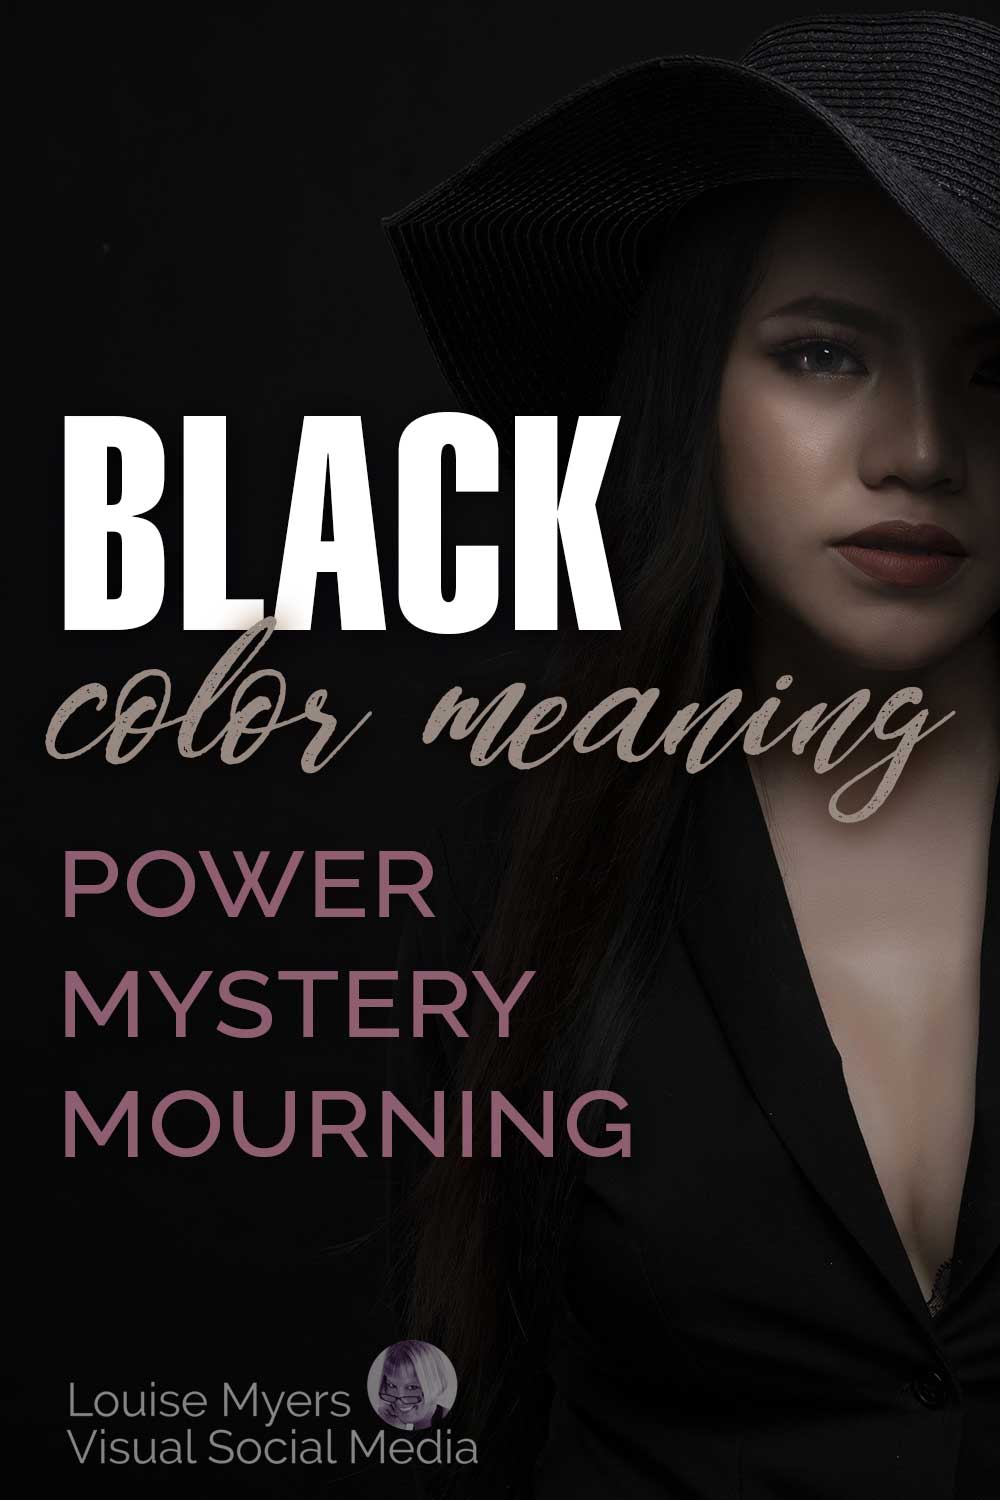 ผู้หญิงที่แรเงาและลึกลับในชุดดำตัดกับพื้นหลังสีดำพร้อมข้อความ ความหมายสีดำ พลังไว้ทุกข์ลึกลับ